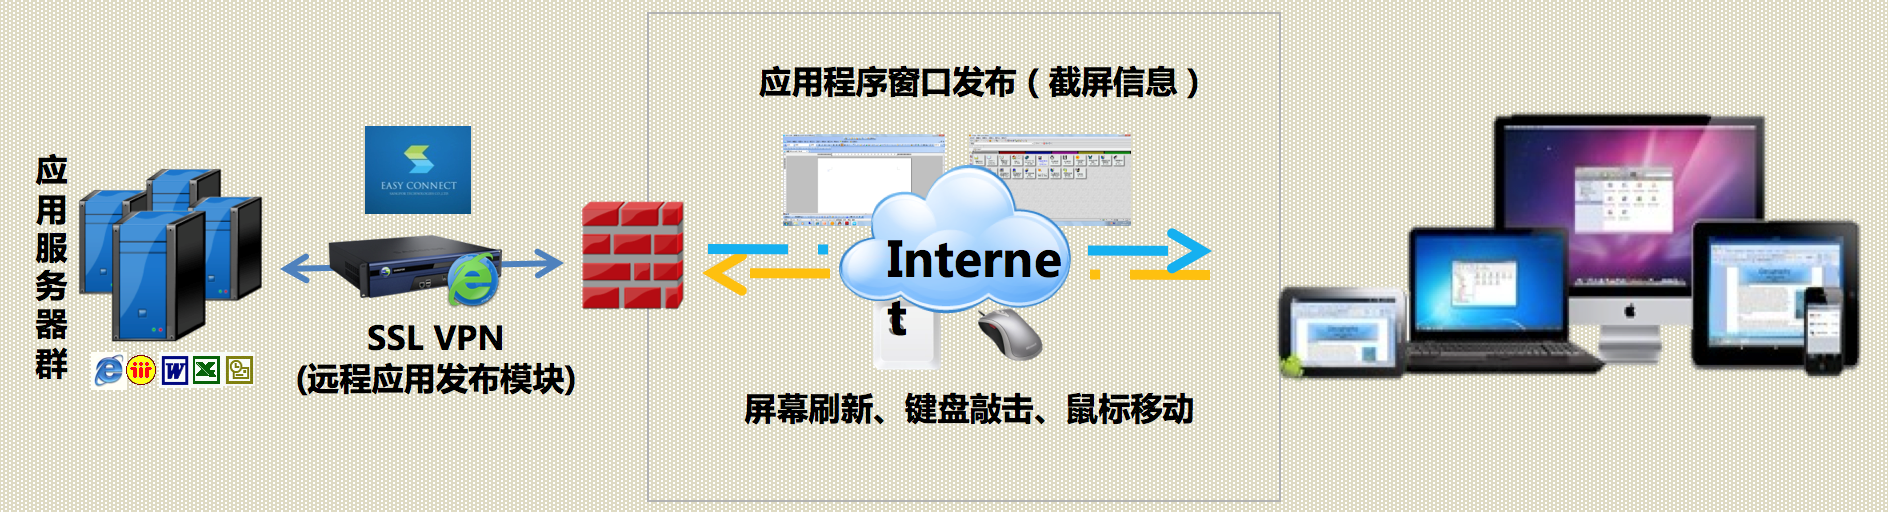 河南SSL VPN哪家好 上海雪莱信息科技供应